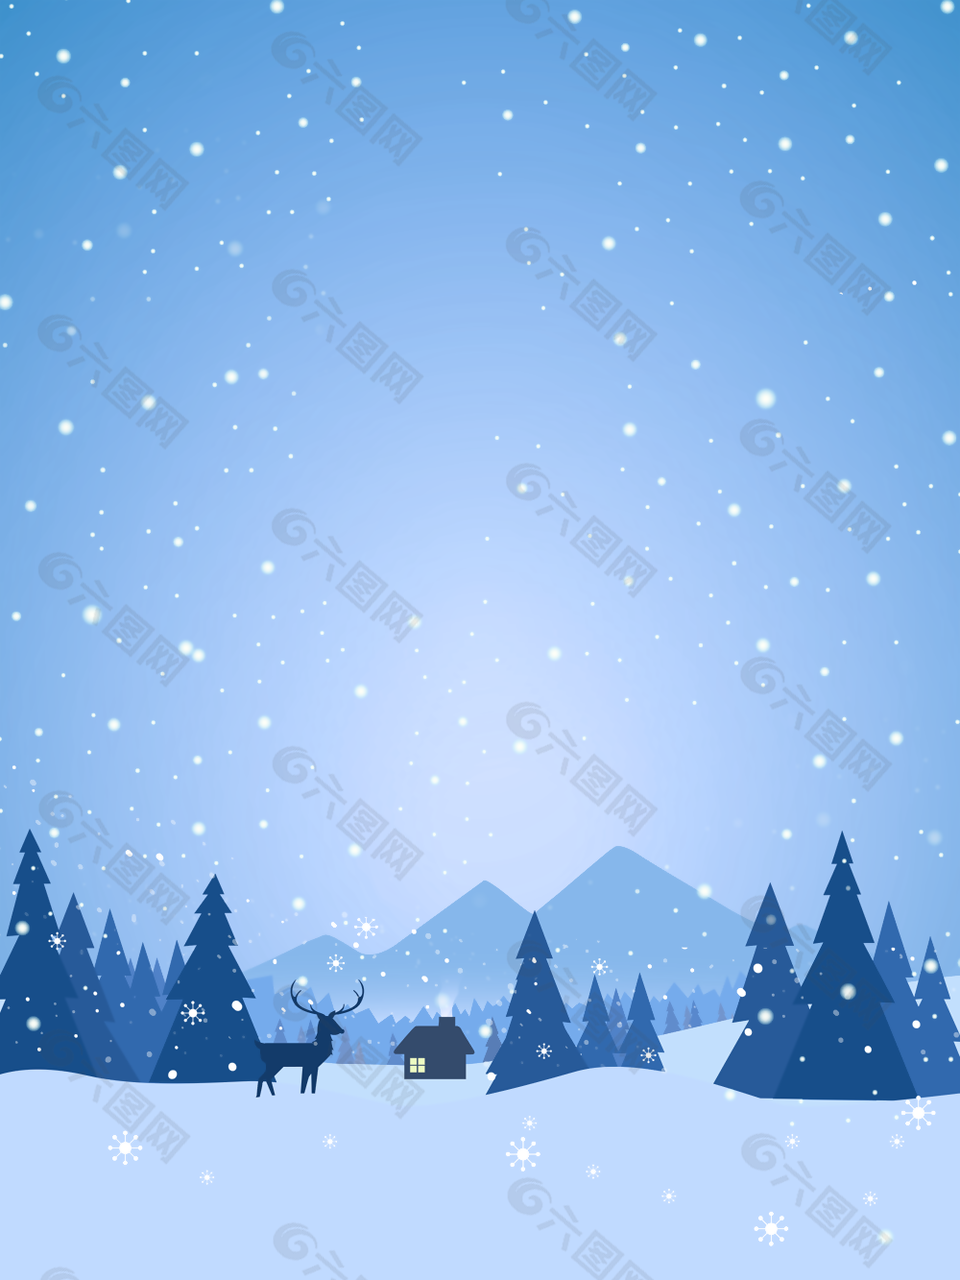 创意简约蓝色冬季雪景H5背景图下载